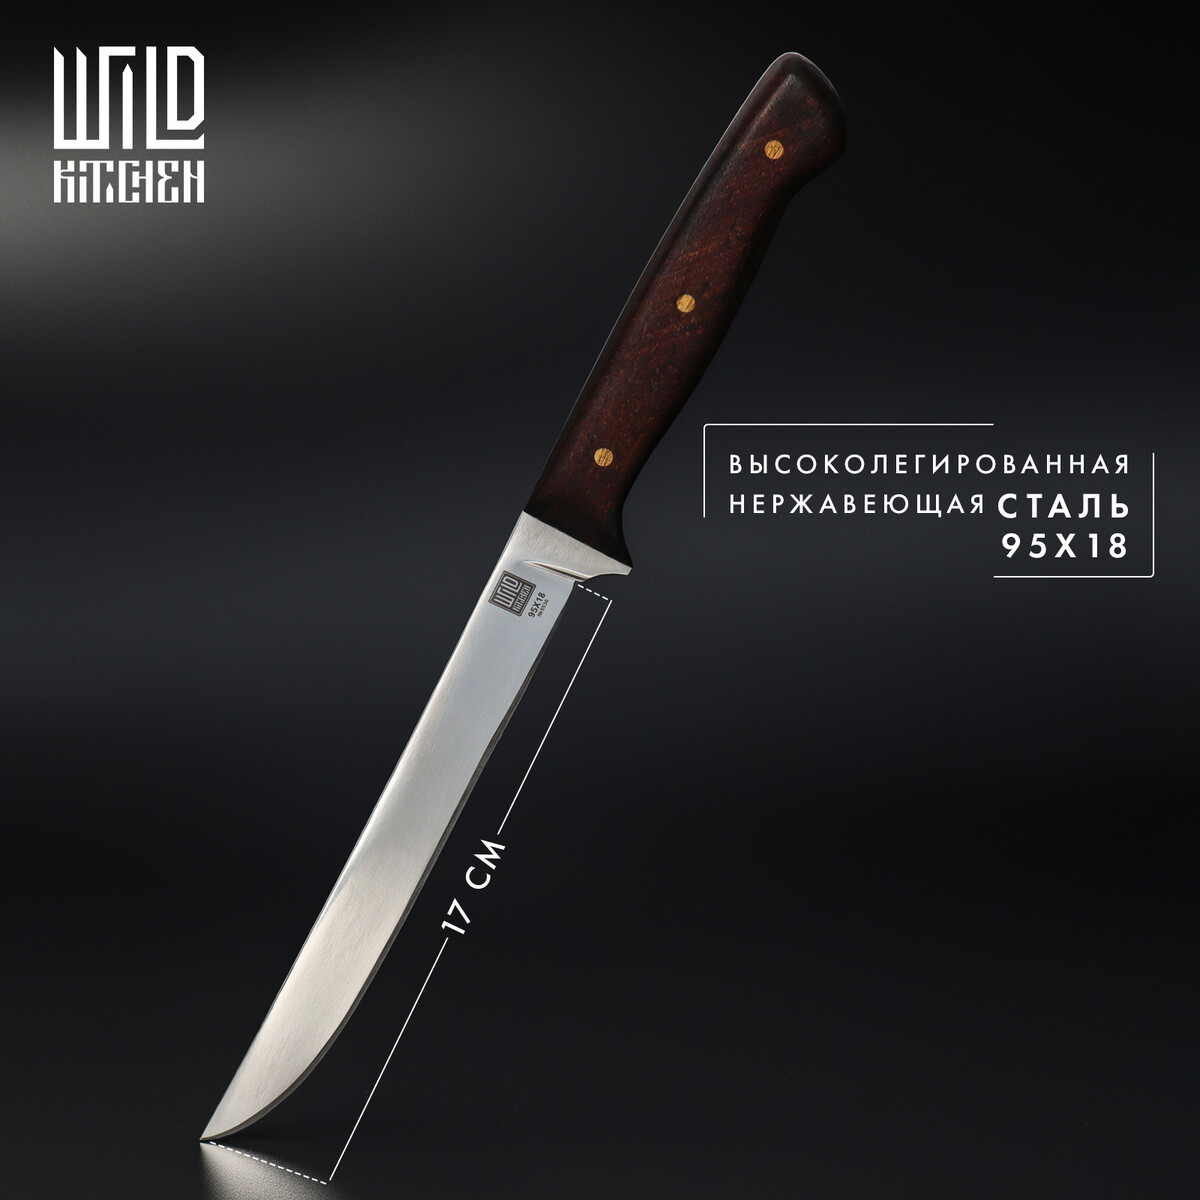 Нож кухонный филейный wild kitchen, сталь 95×18, лезвие 17 см нож пчак кухонный wild kitchen сталь 95×18 лезвие 16 5 см